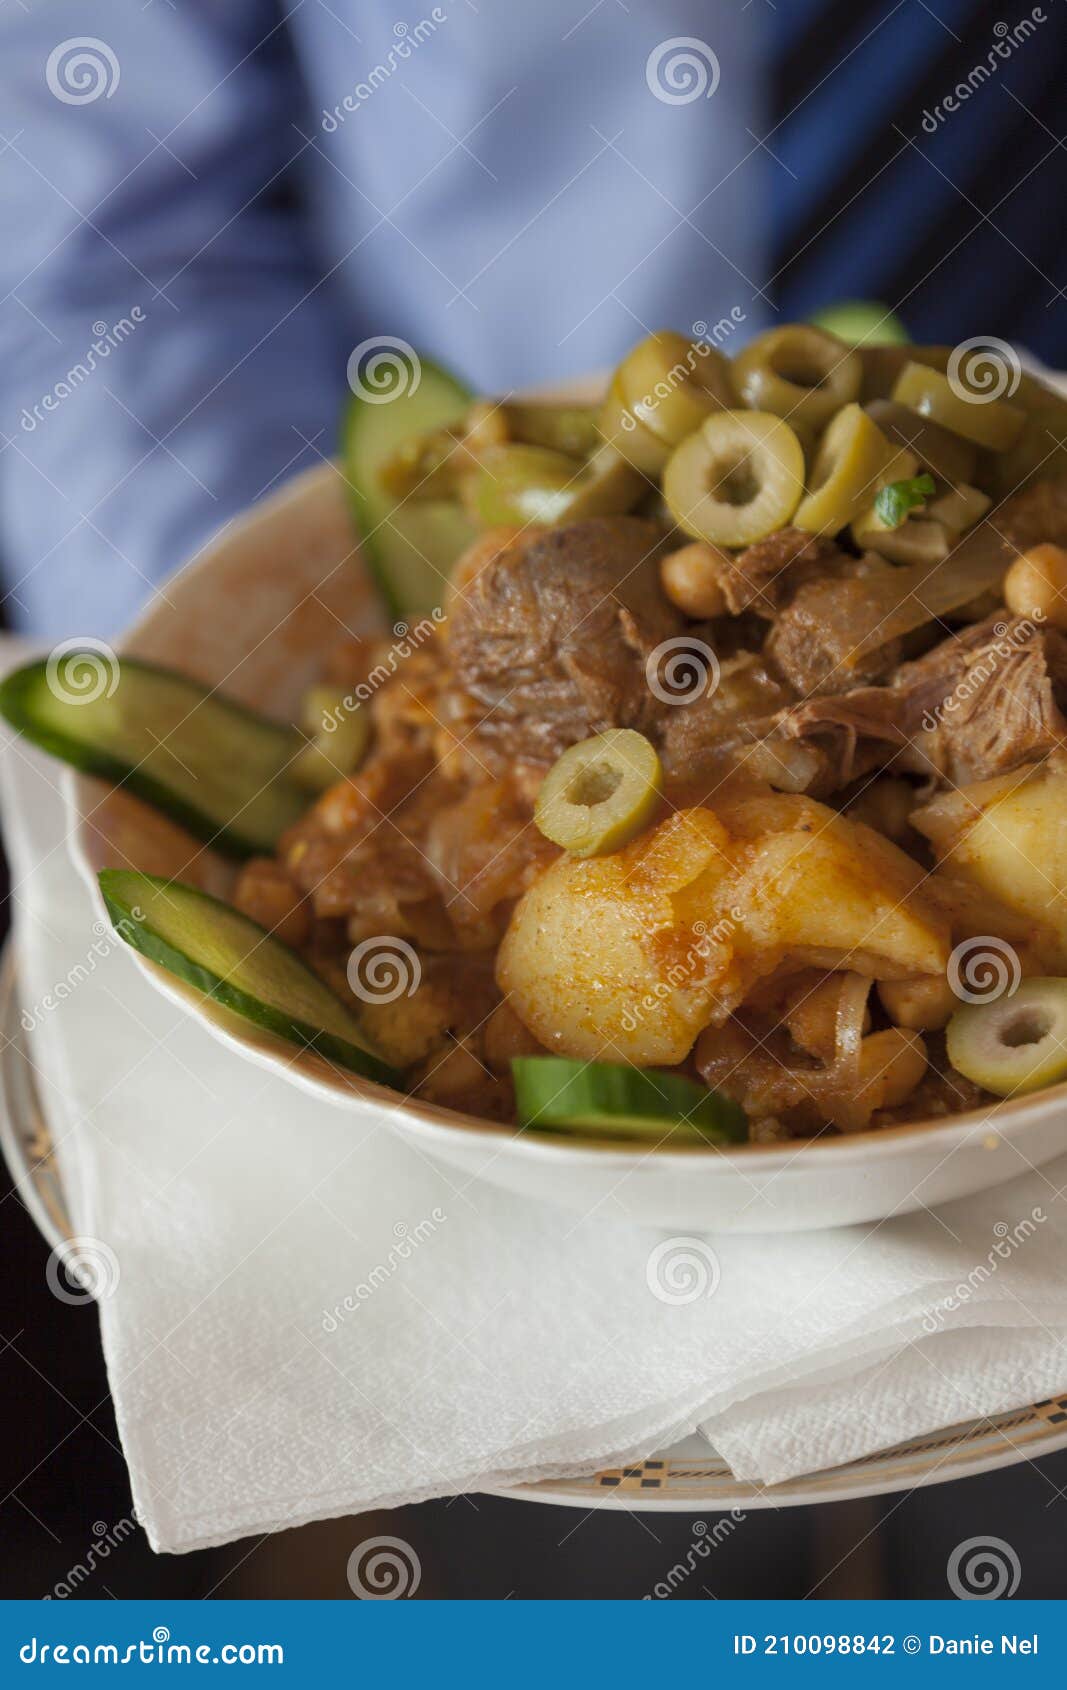 delicious libyan stew